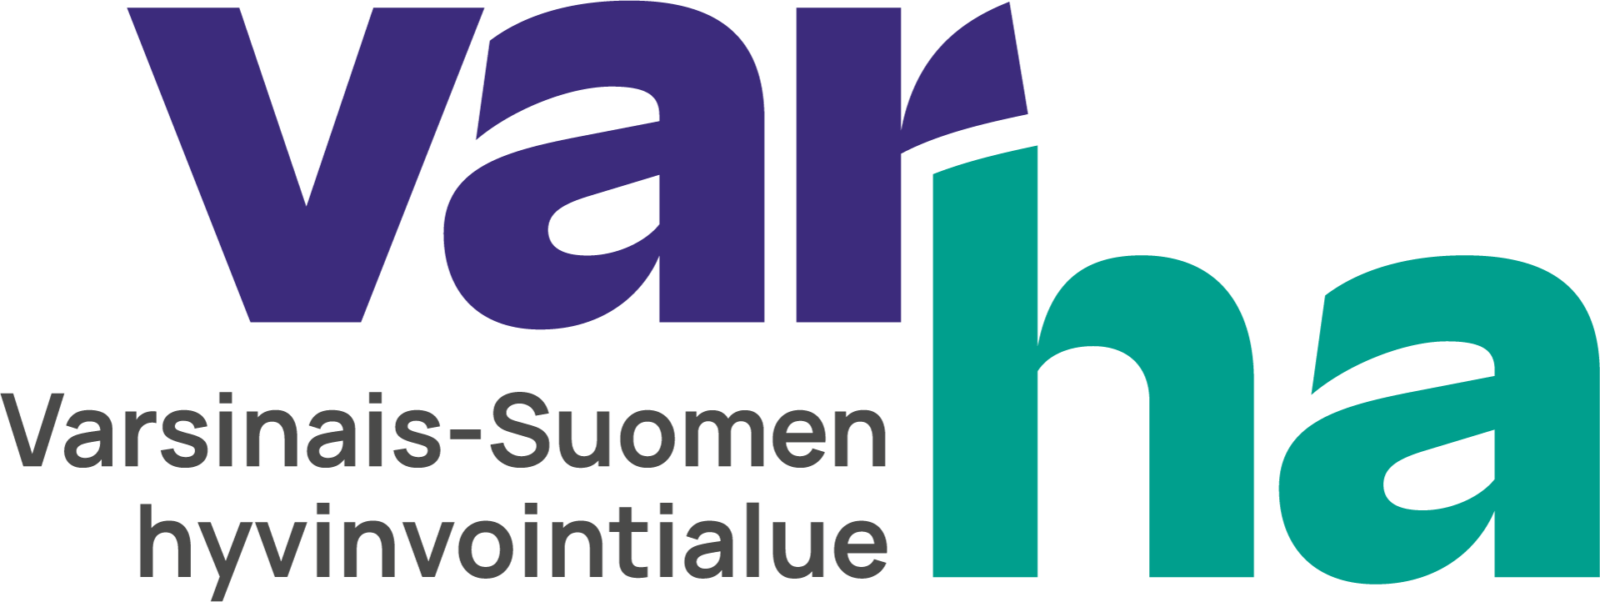 Varha logo